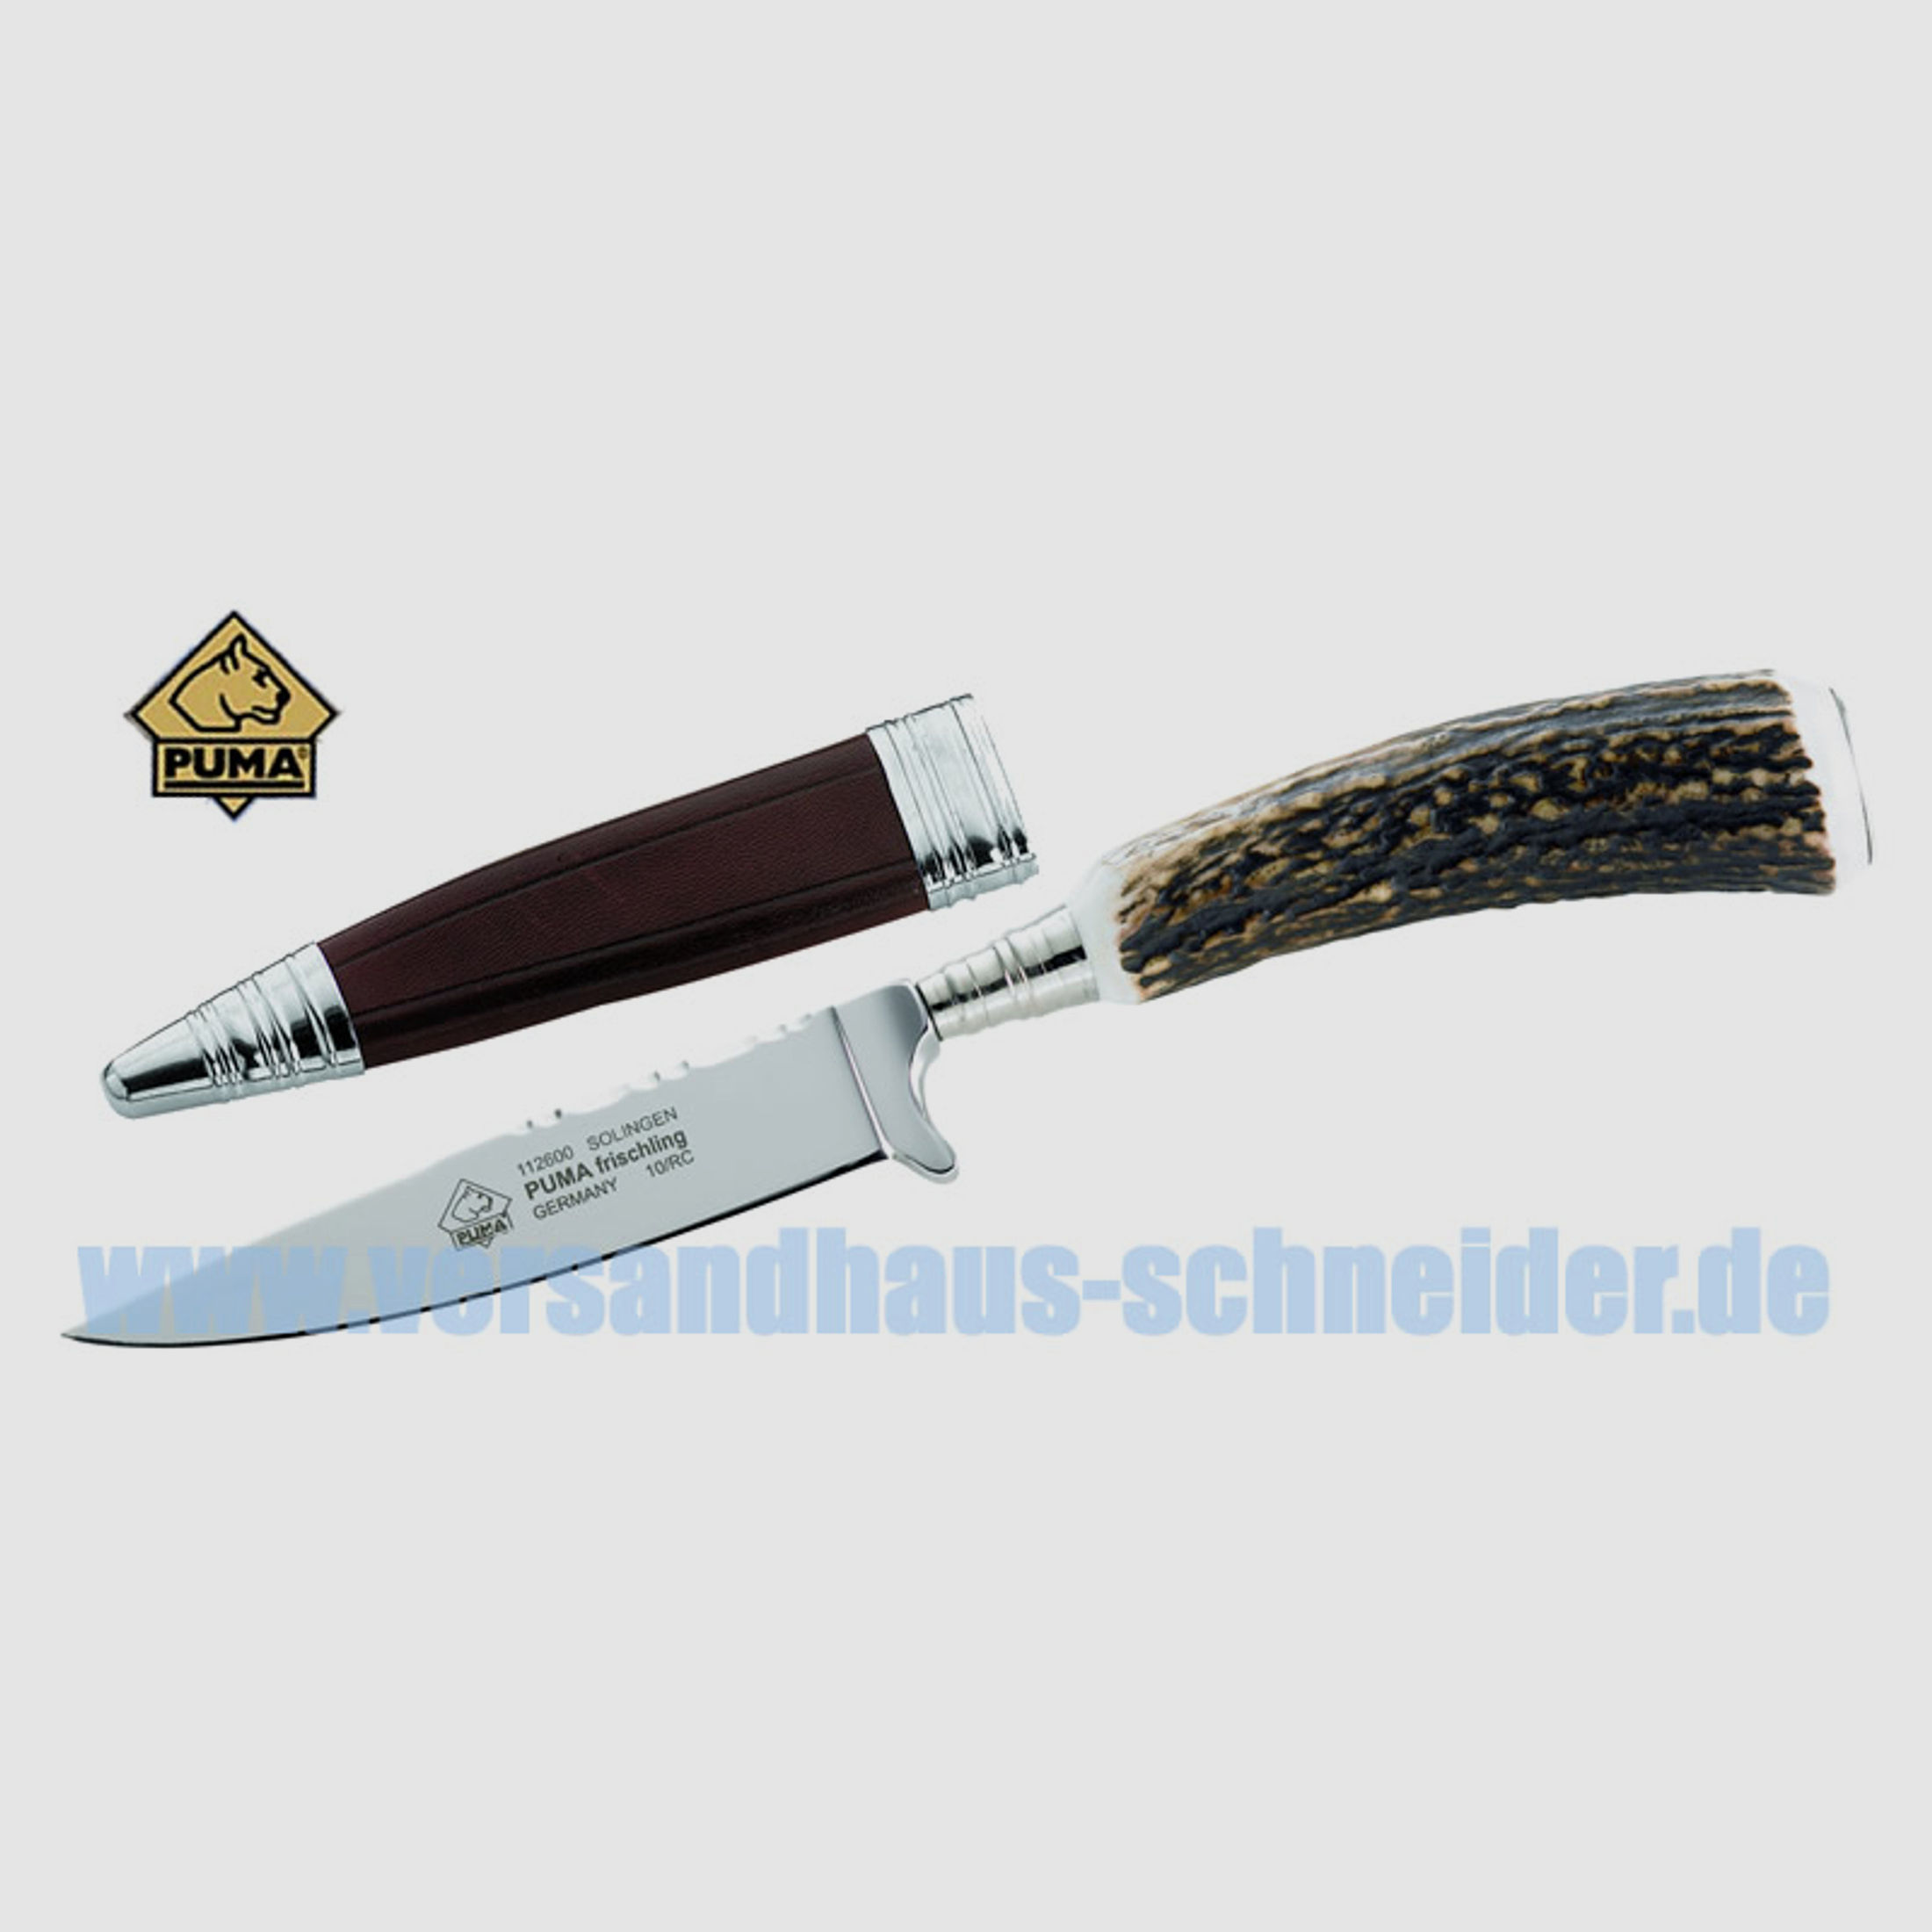 Puma Jagdmesser, Modell Frischling, Stahl 1.4116, Hirschhorn , Lederscheide P18)